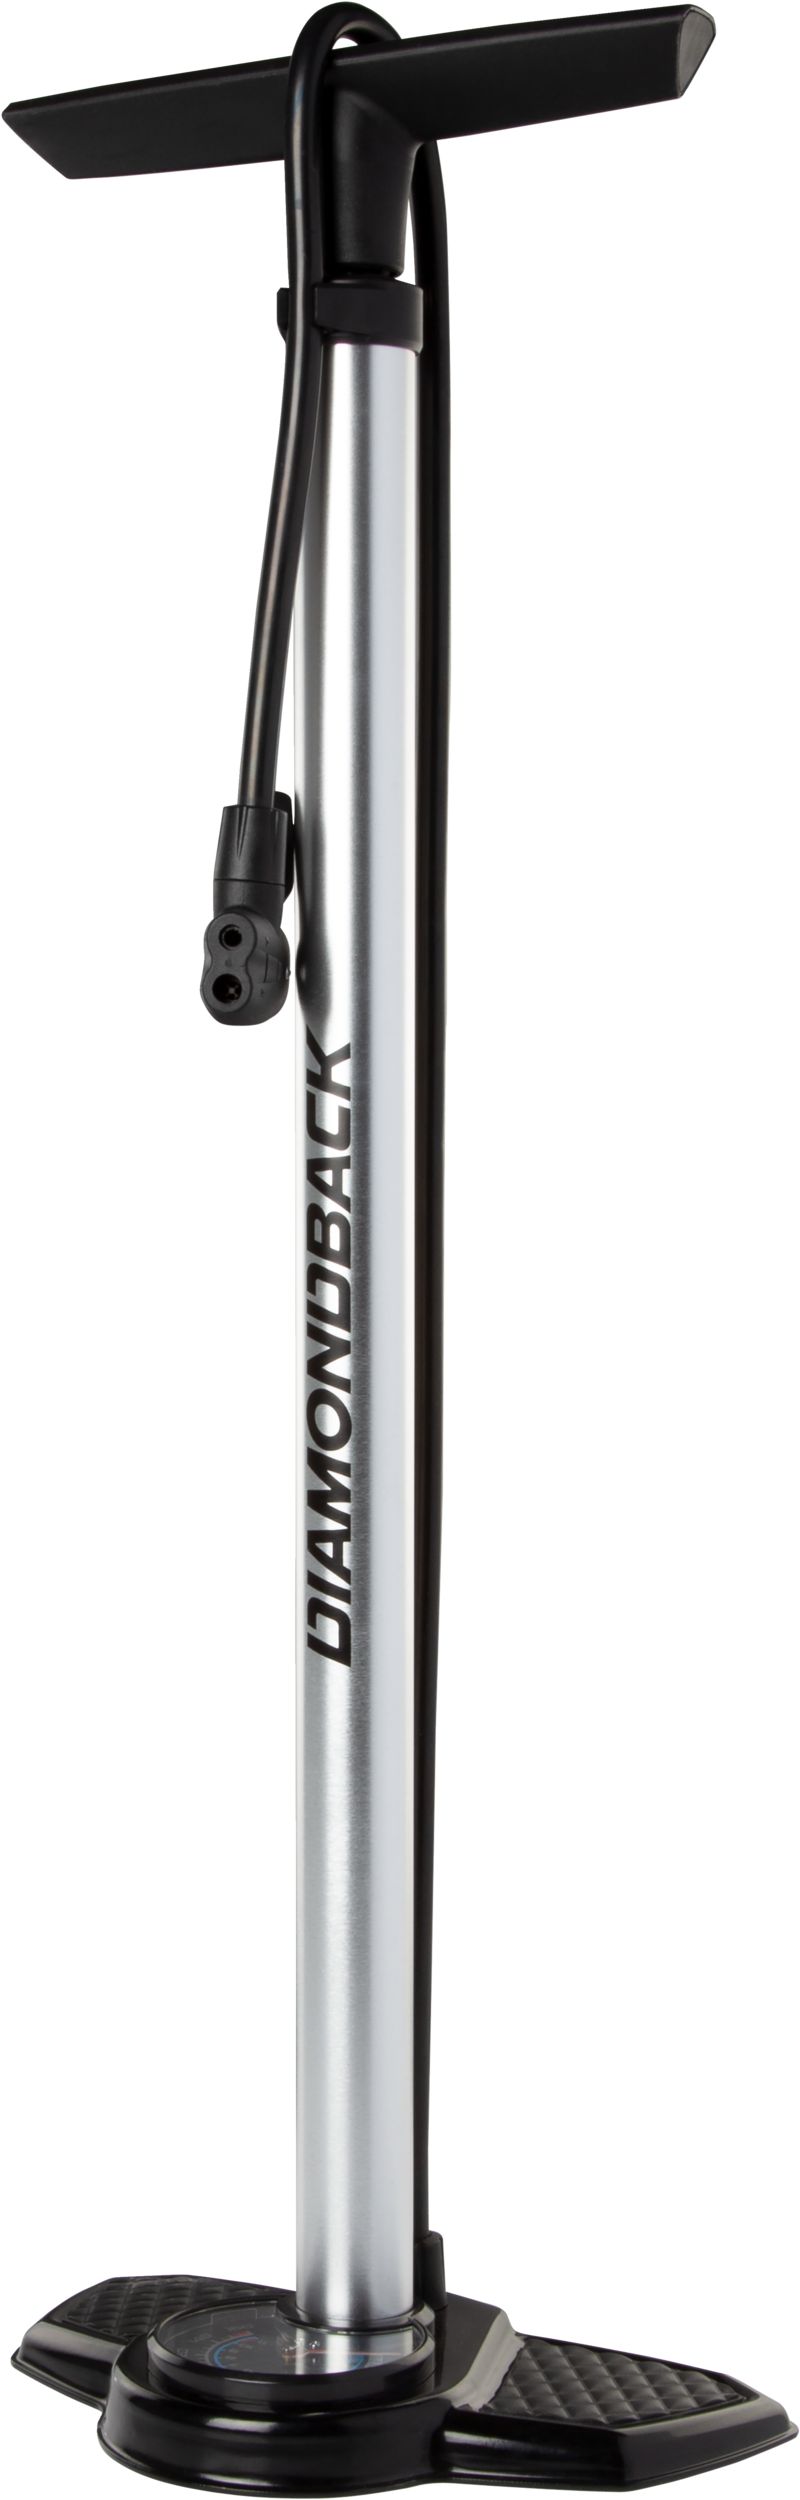 Diamondback Bike Floor Pump  Low Profile Gauge